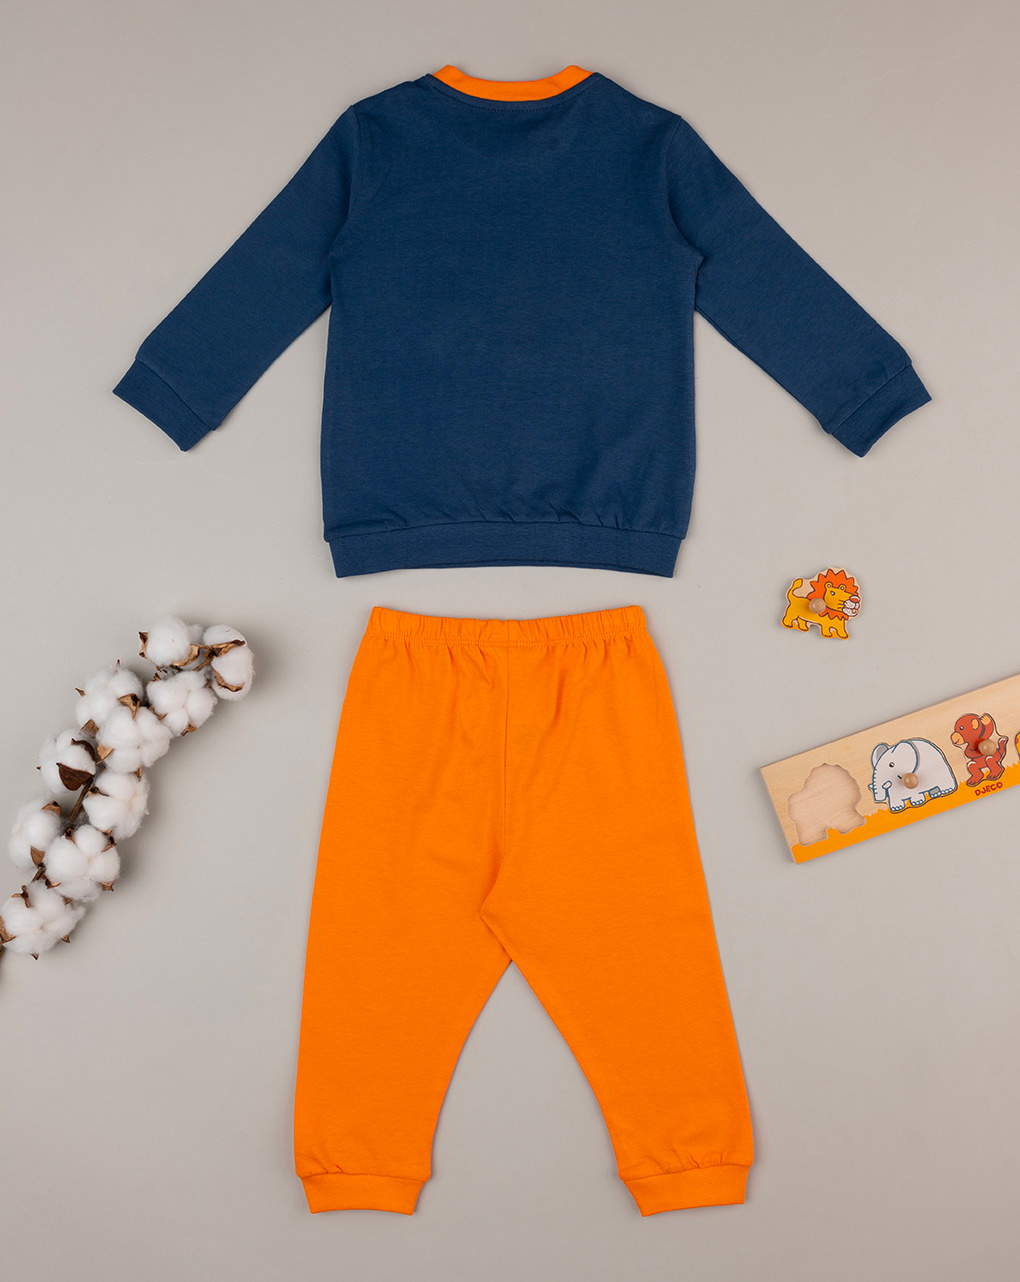 βρεφική πιτζάμα μπλε/πορτοκαλί με λιοντάρι για αγόρι - Prénatal